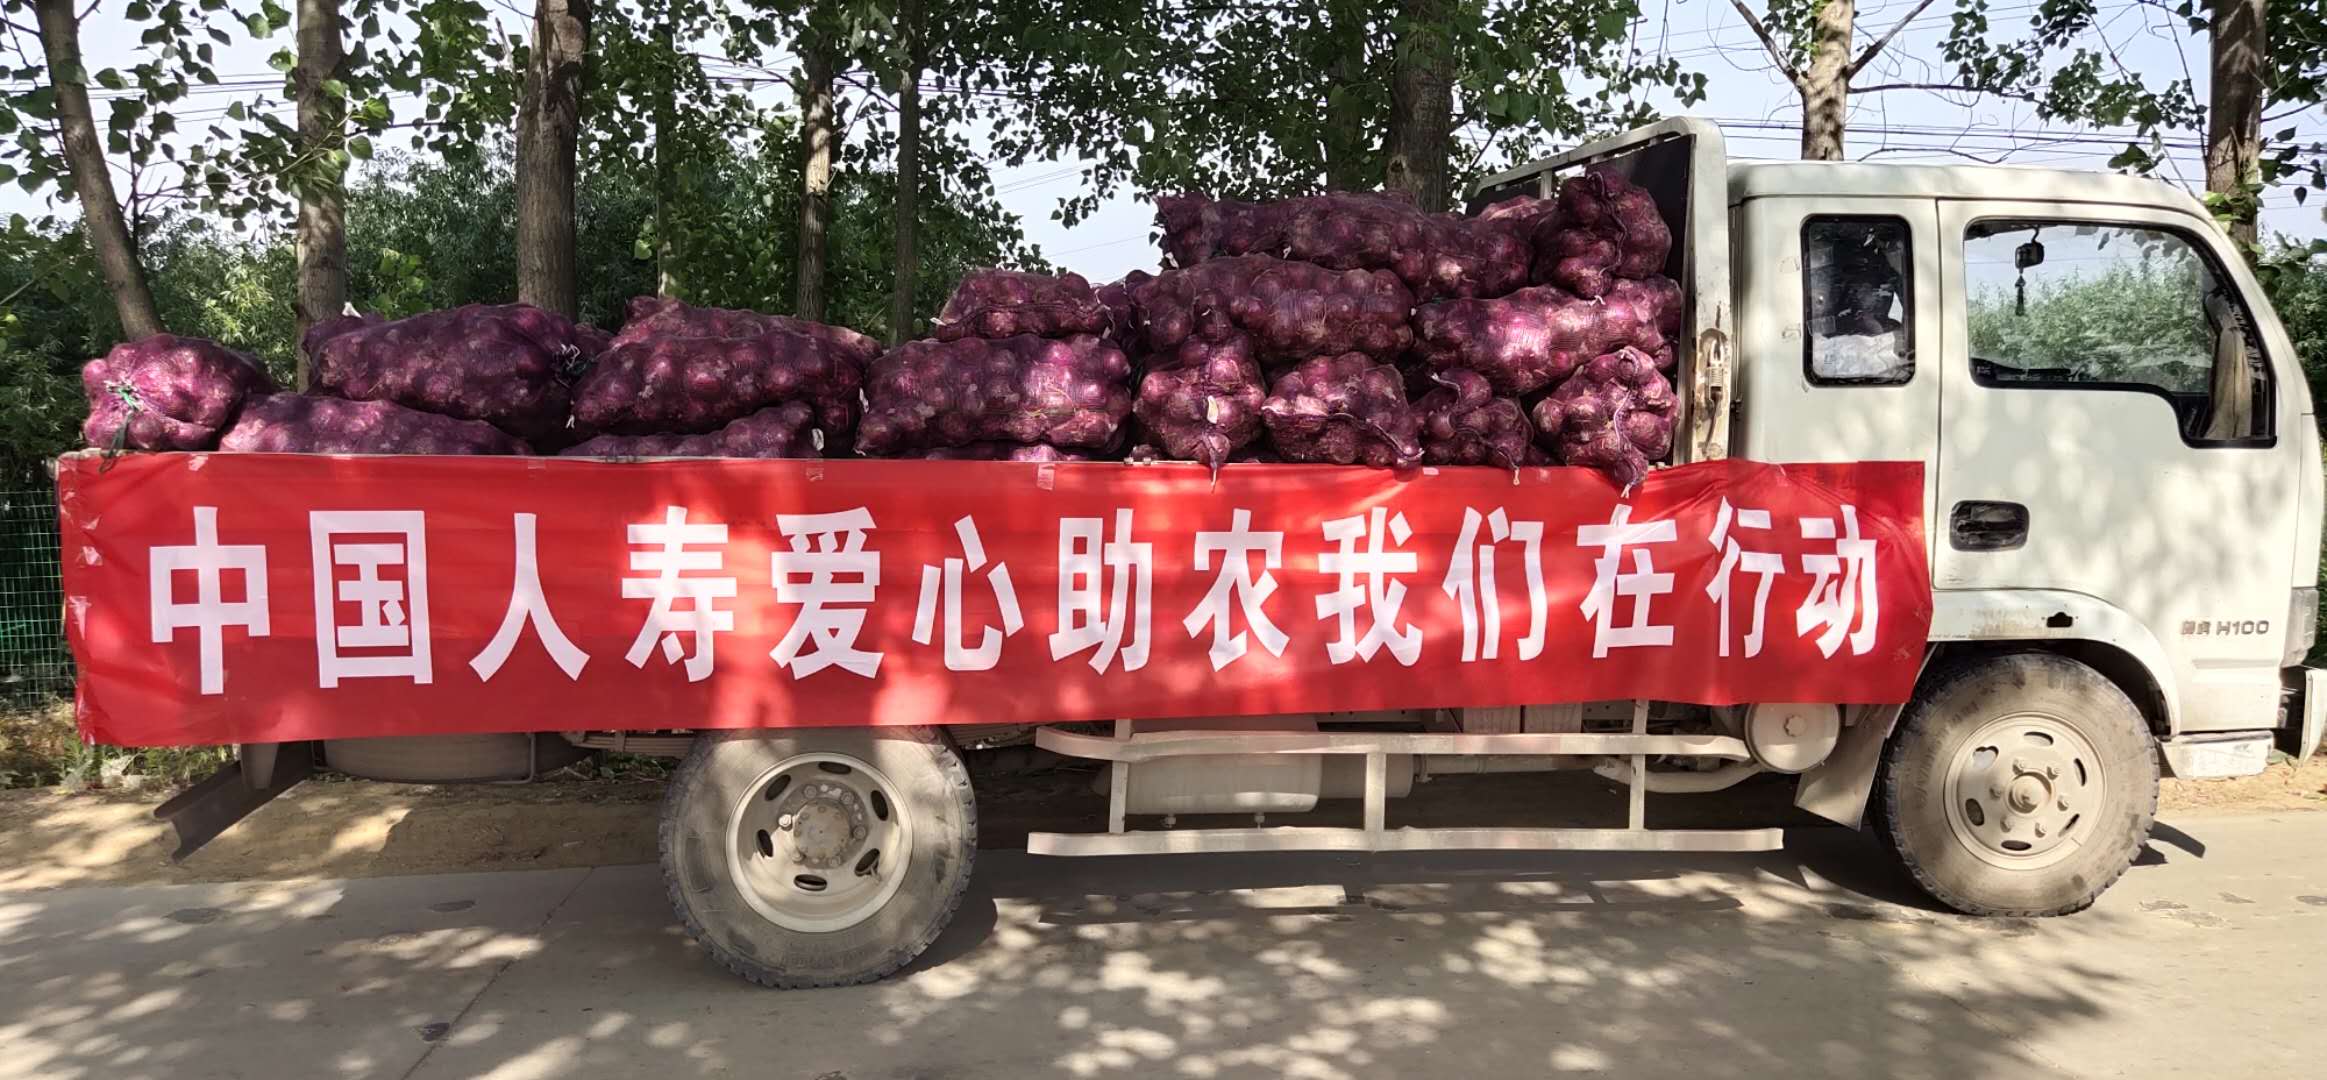 中国人寿献爱心  帮农解决售菜难